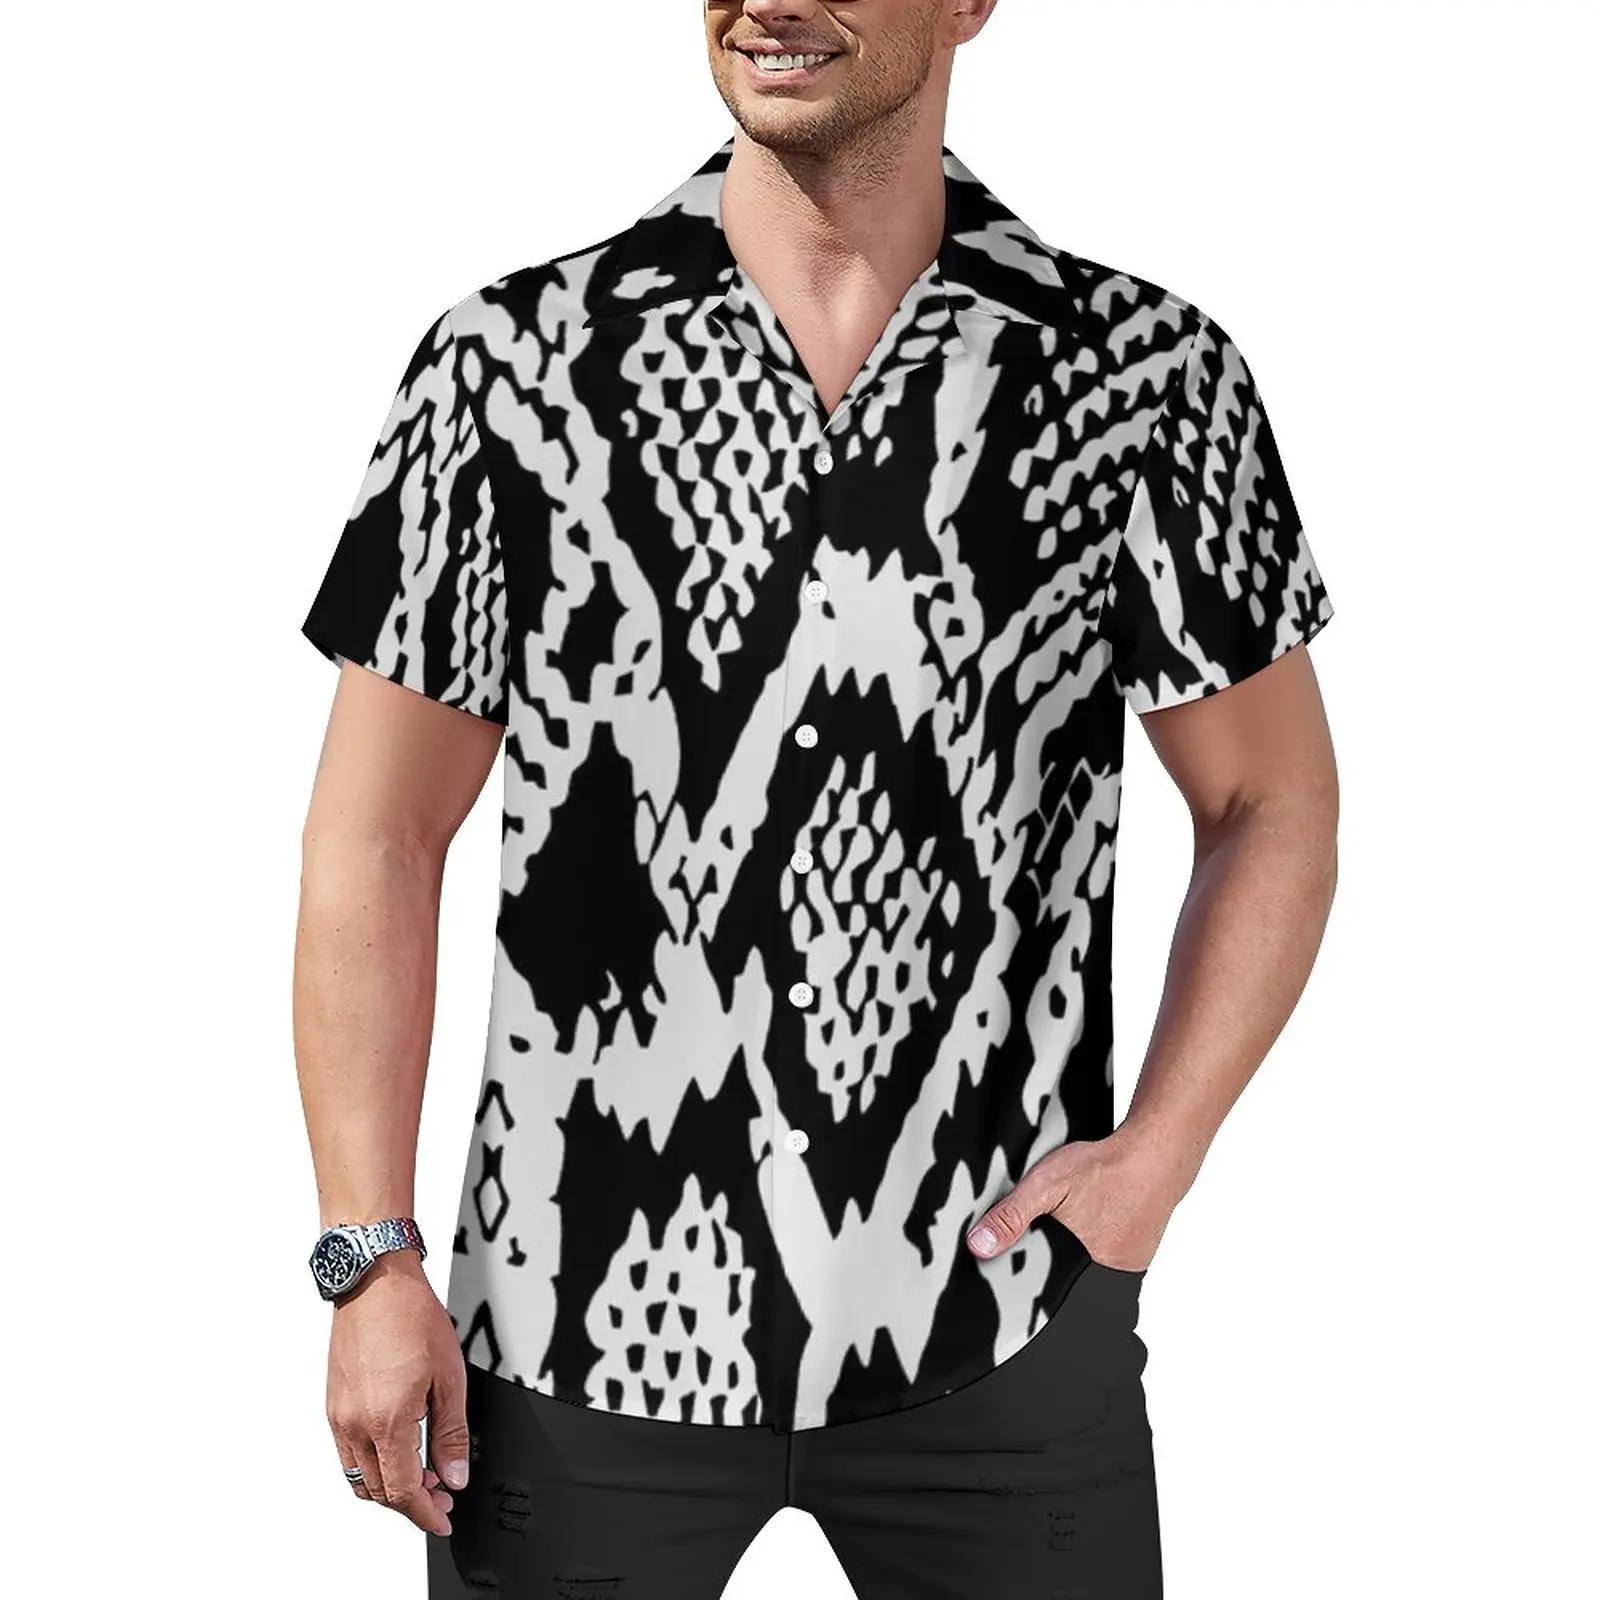 

Повседневная рубашка с черной текстурой под змеиную кожу, тоническая пляжная Свободная рубашка с принтом кобры и боа, Гавайские блузки, Топ большого размера с коротким рукавом